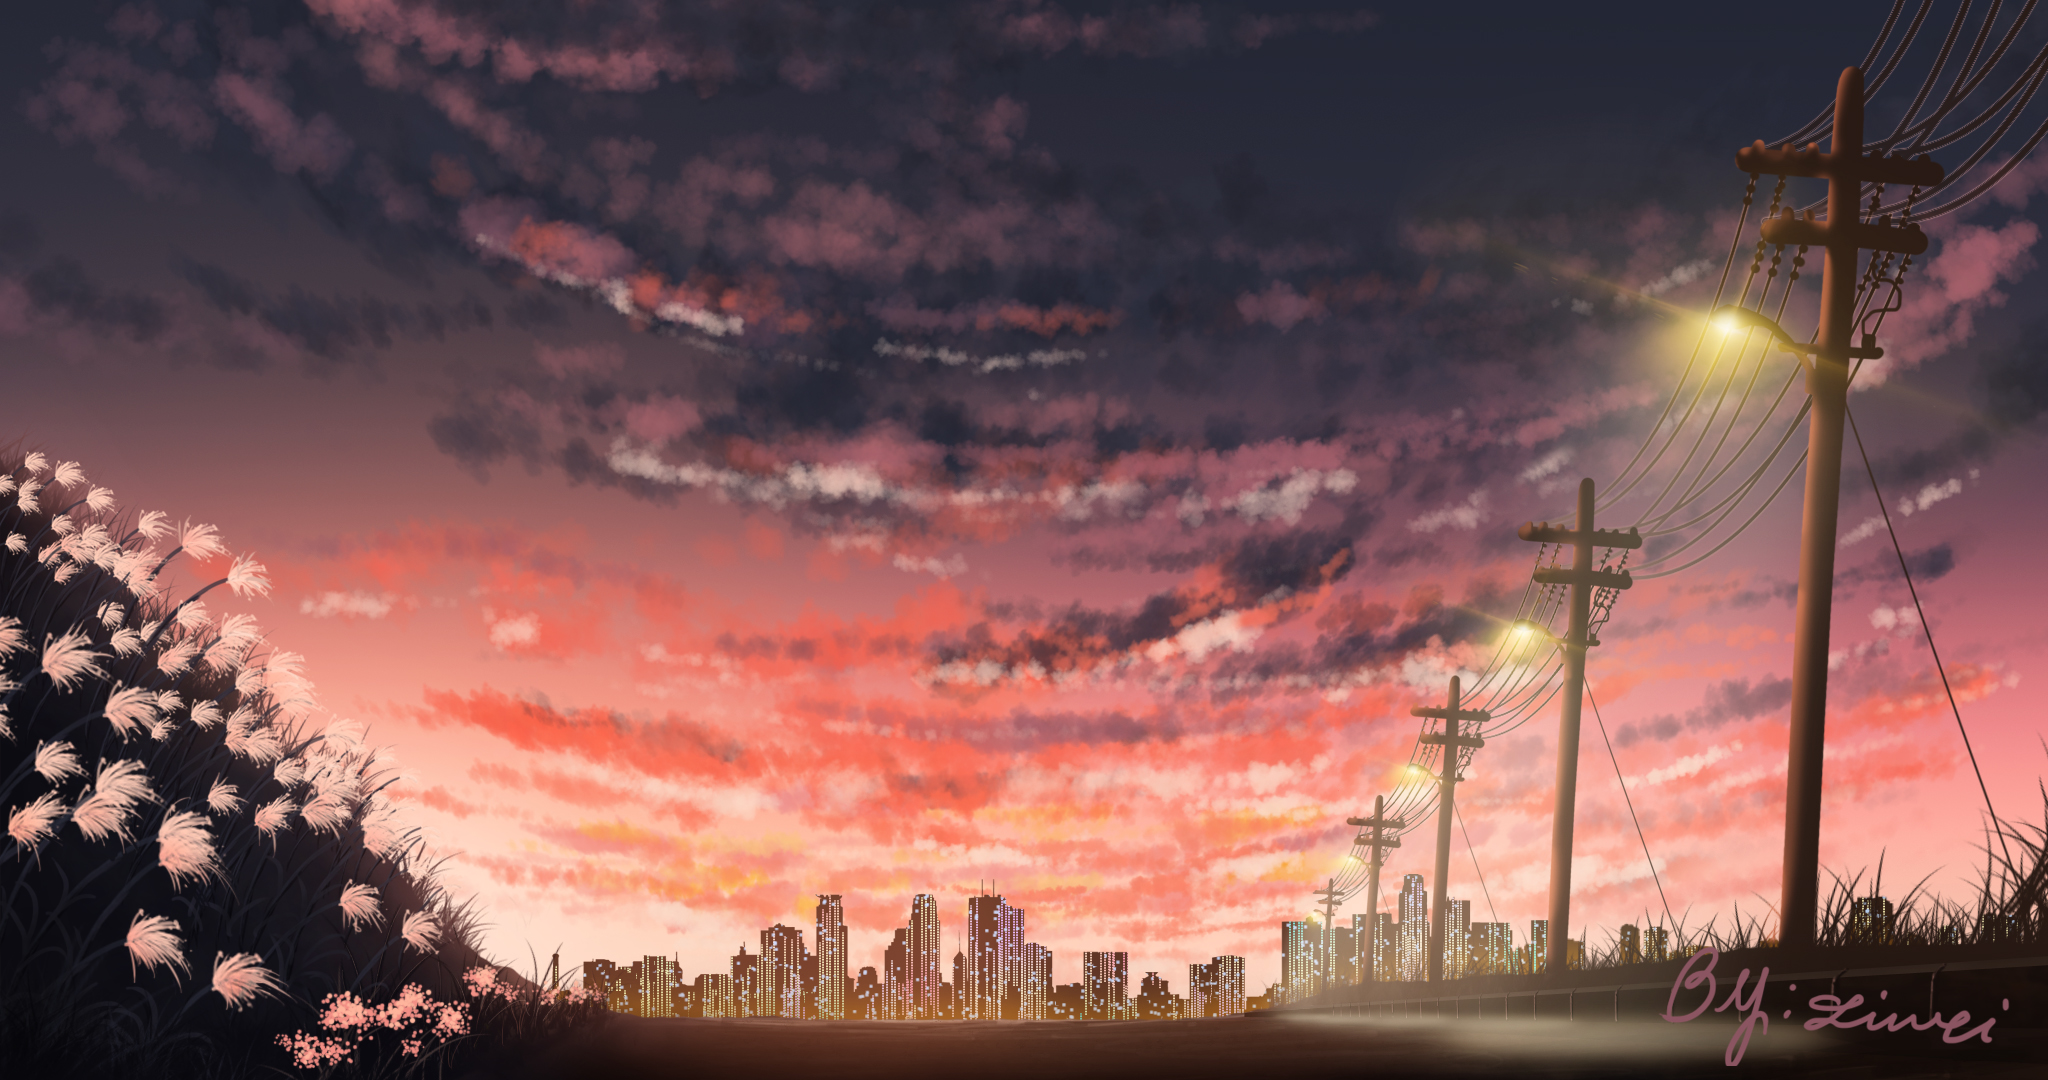 Download Light City Sunset Anime Original HD Wallpaper by liwei191